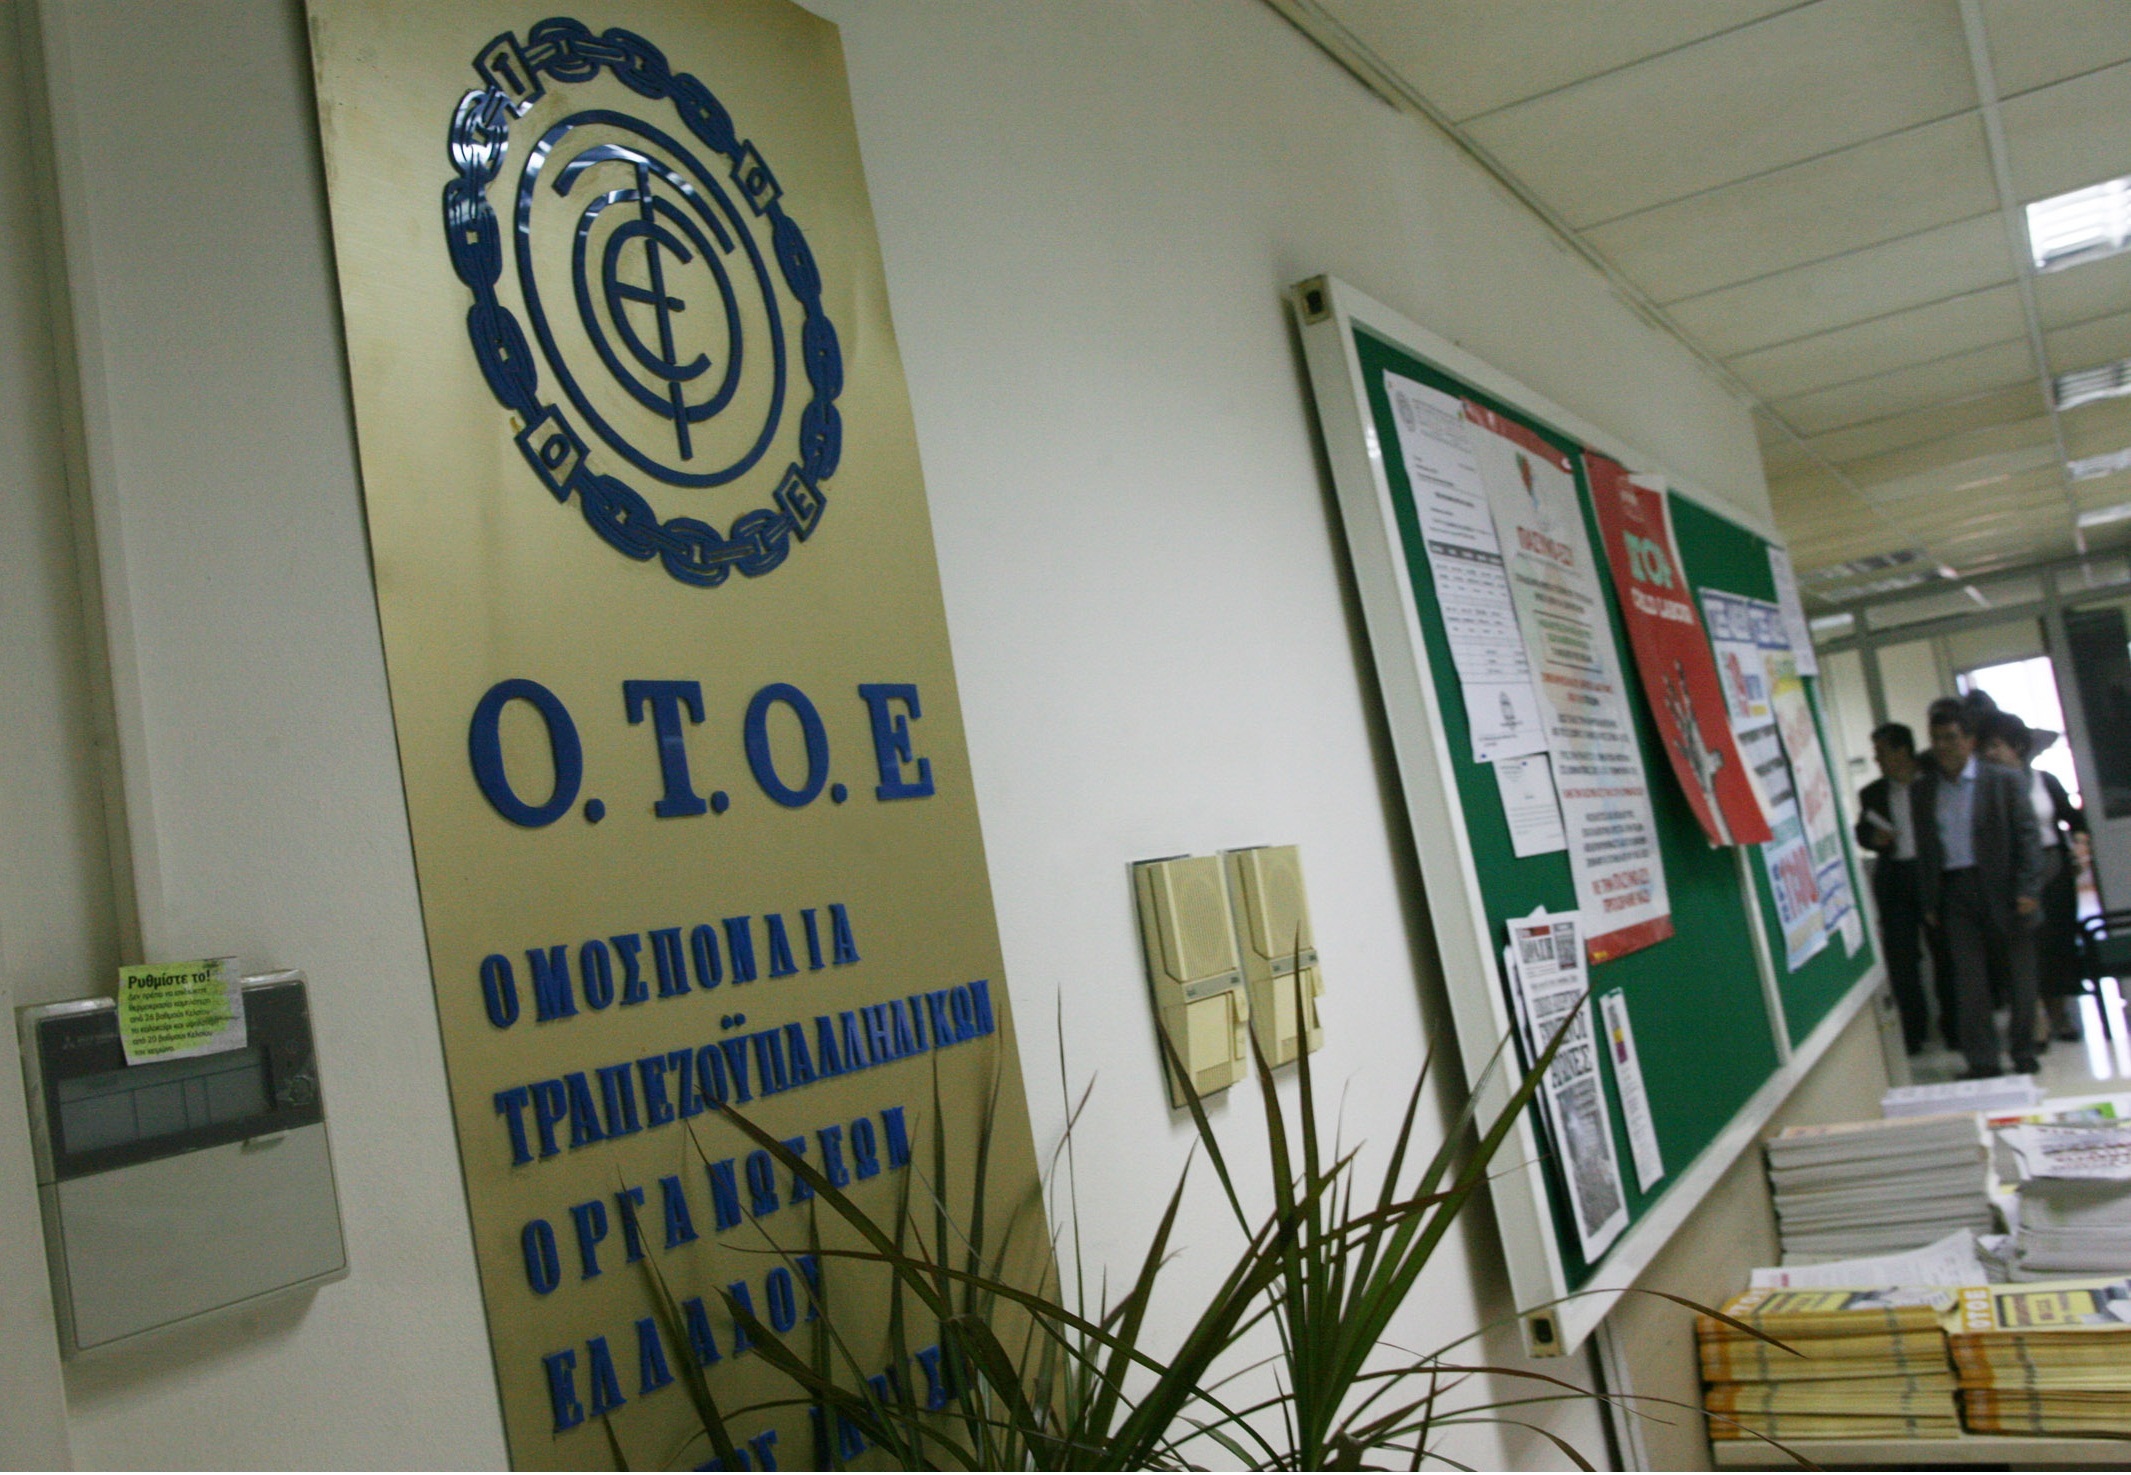 Τη συμμετοχή όλων των τραπεζών στην ανακεφαλαιοποίηση ζητά η ΟΤΟΕ